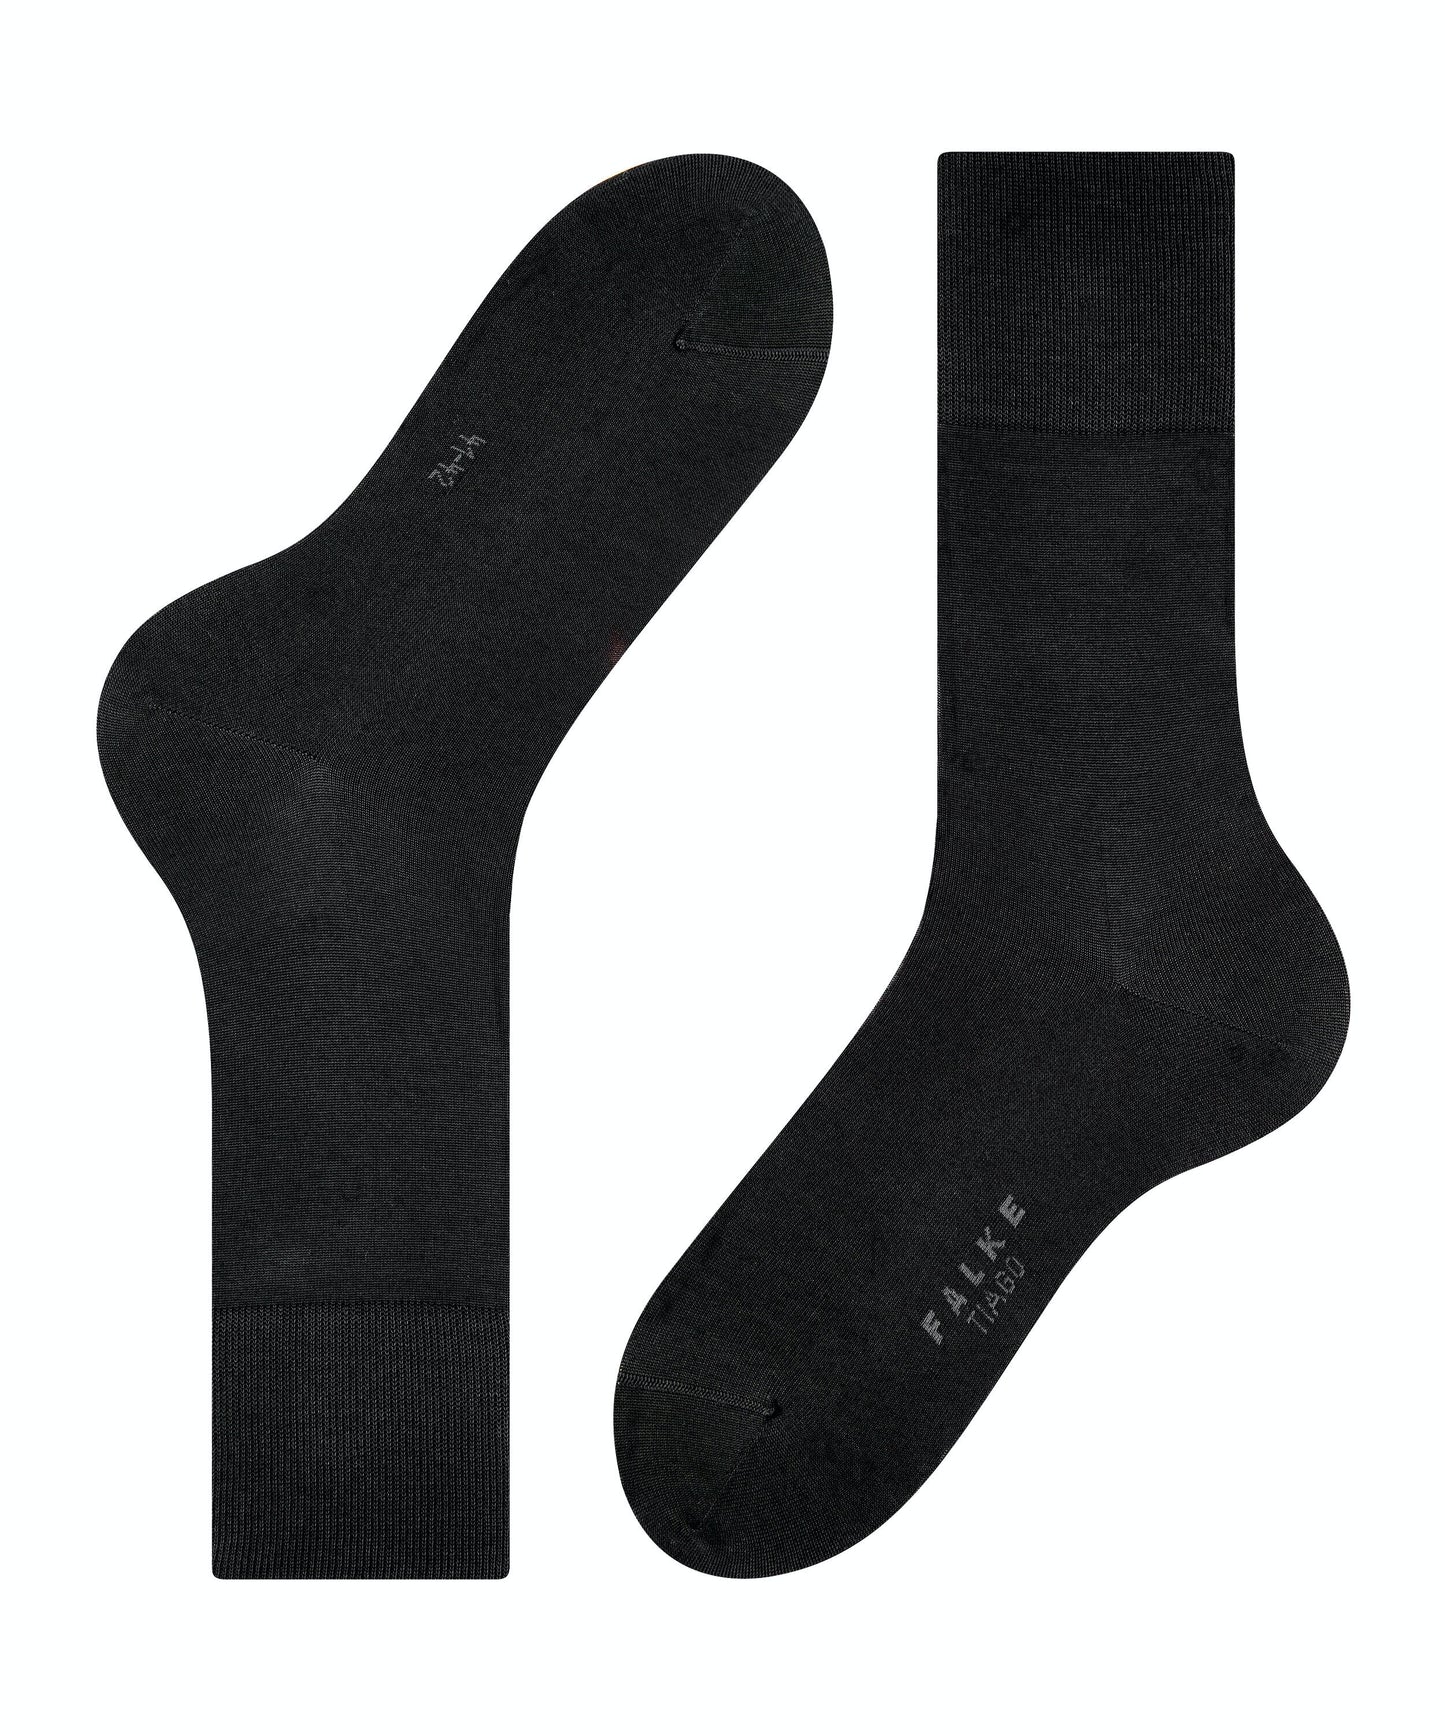 FALKE TIAGO Socks in Black 14662-3000